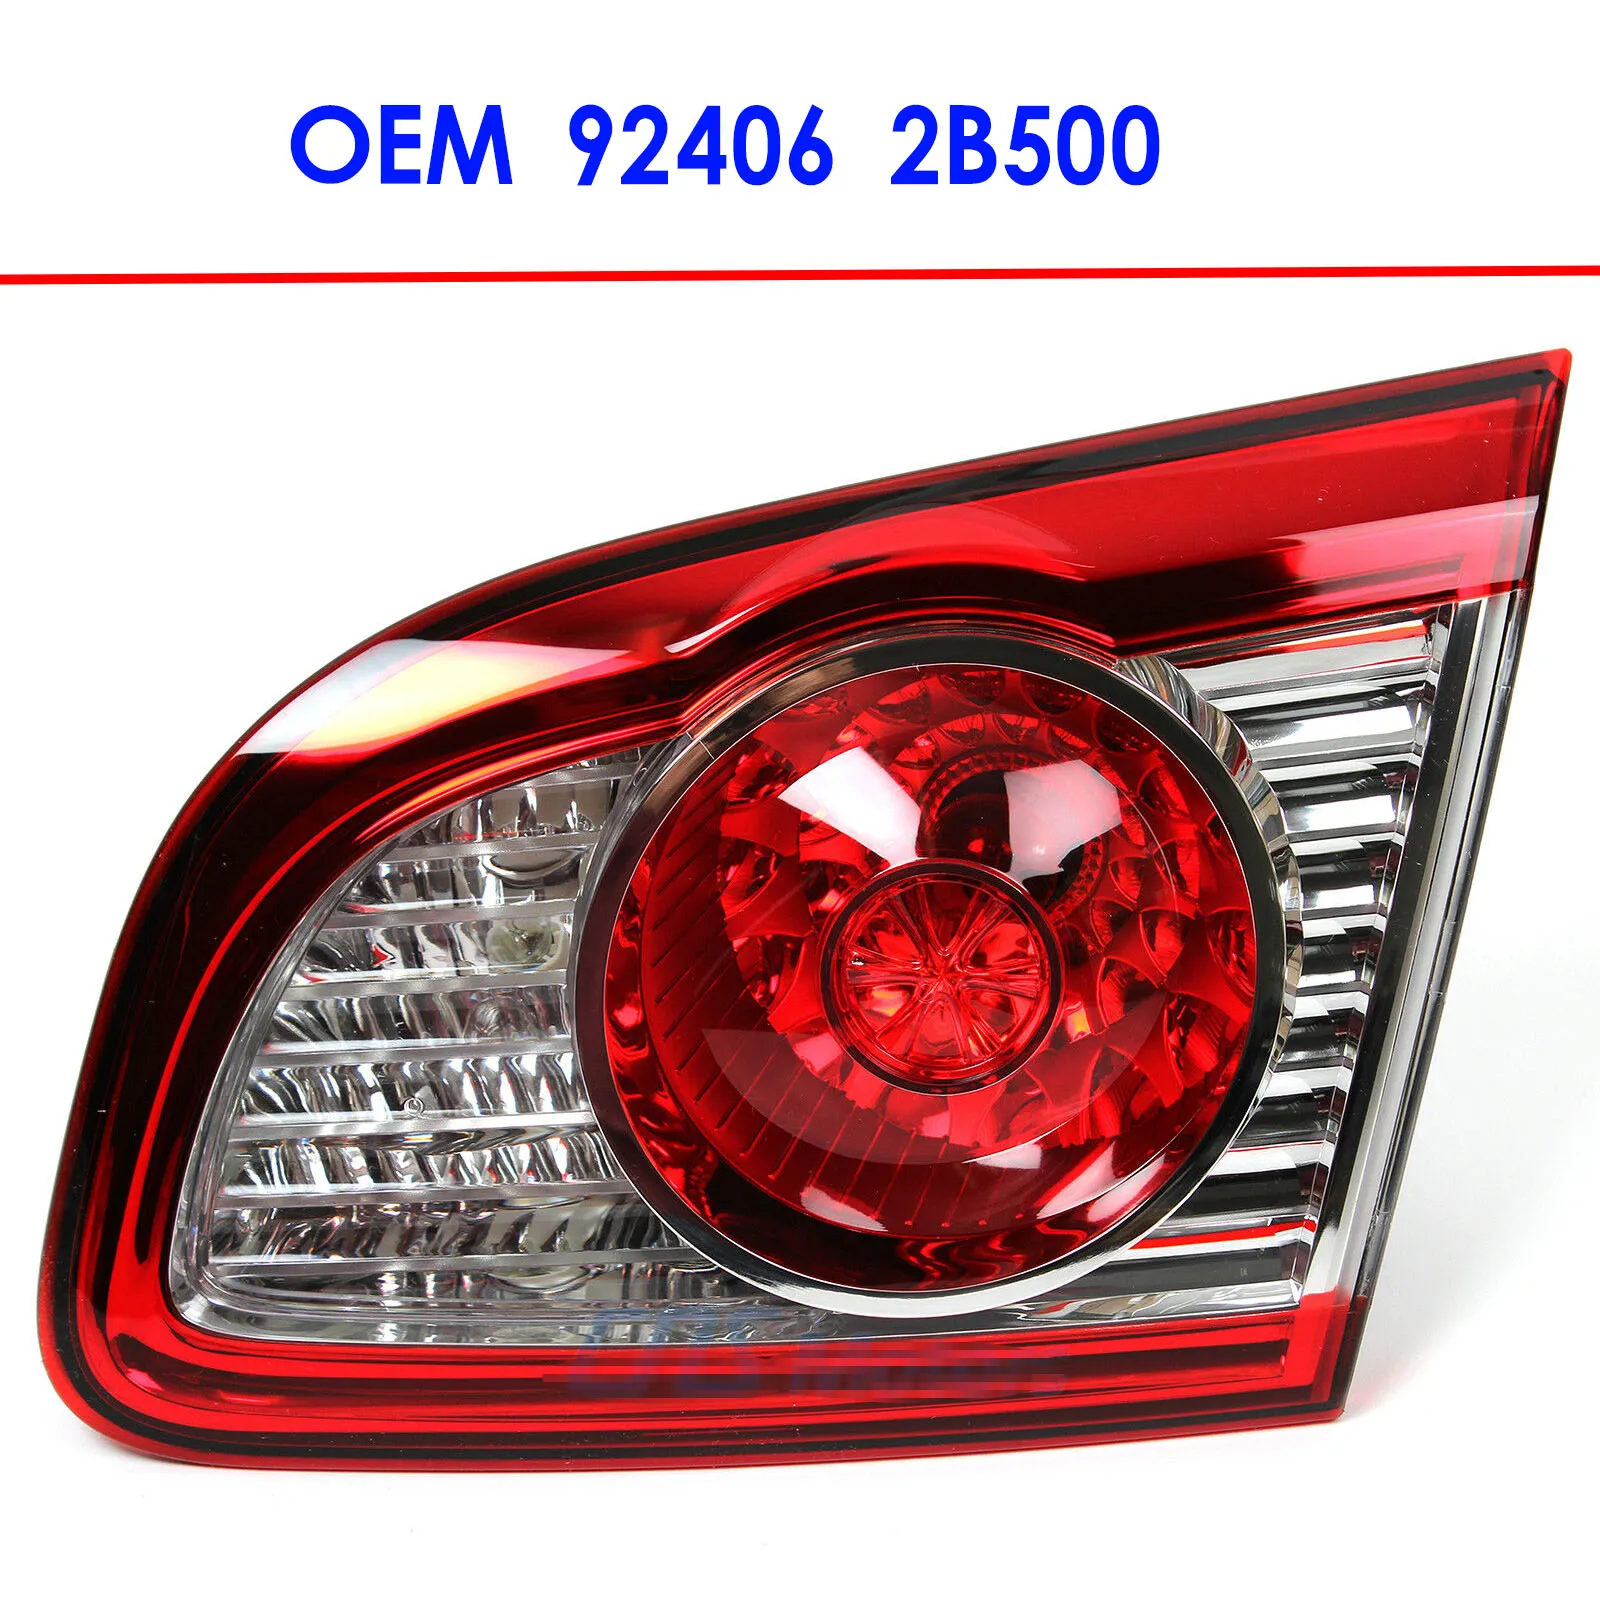 Подлинный задний фонарь внутренний LH и RH 2010-2012 для Hyundai Santa Fe OEM 924052B500 924062B500 - купить